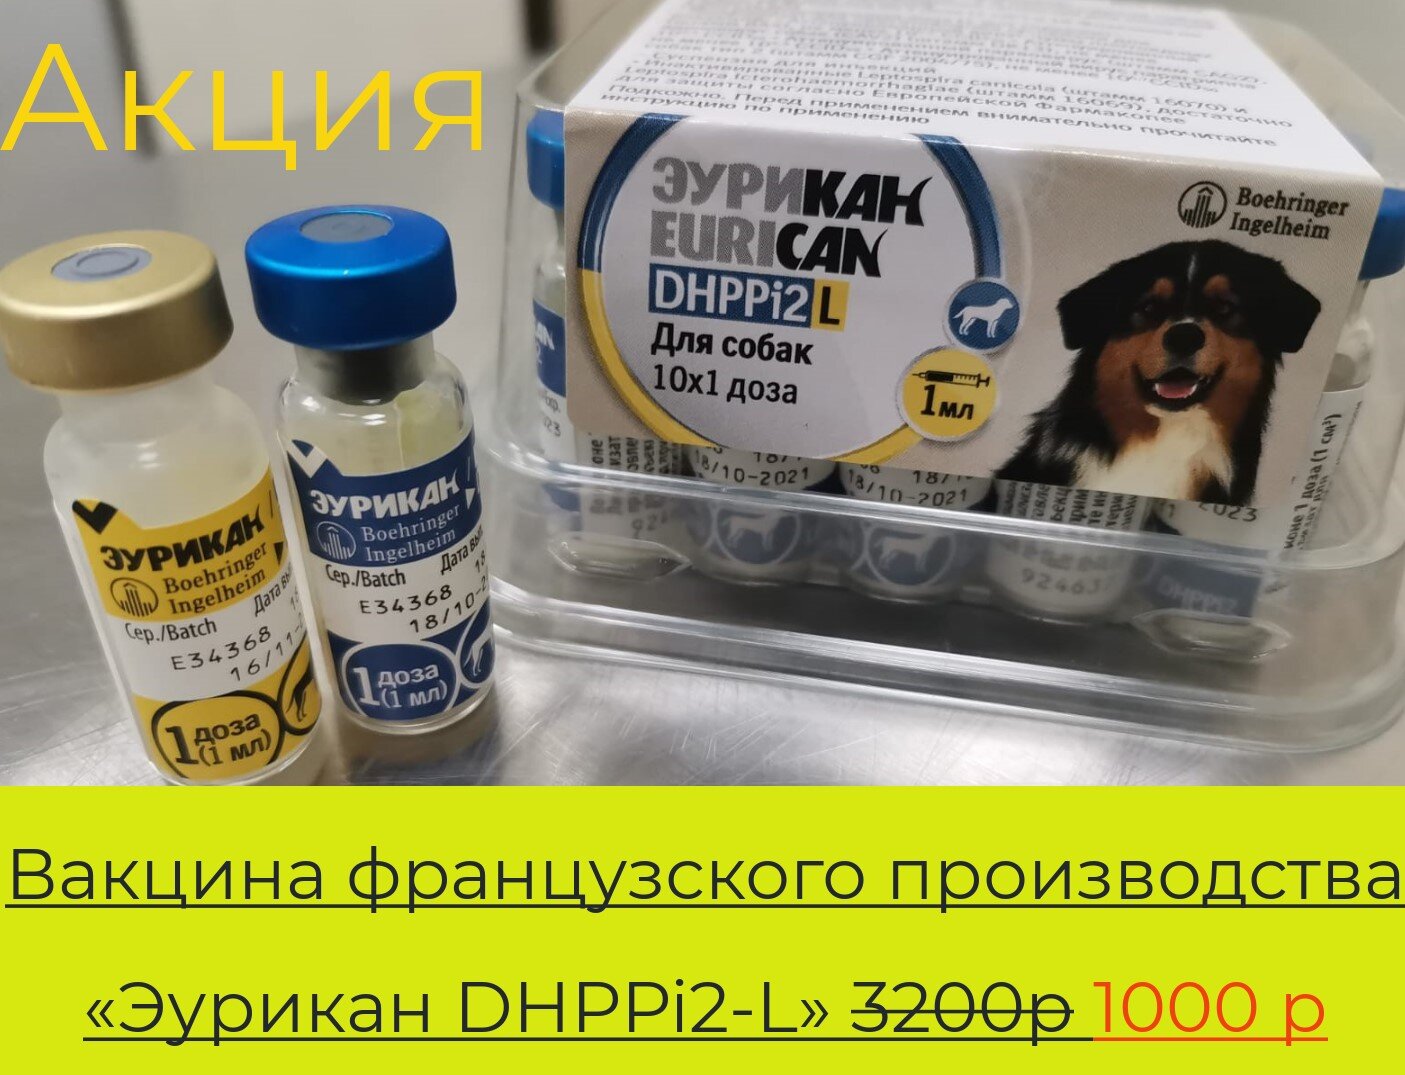 Купить вакцину эурикан в москве